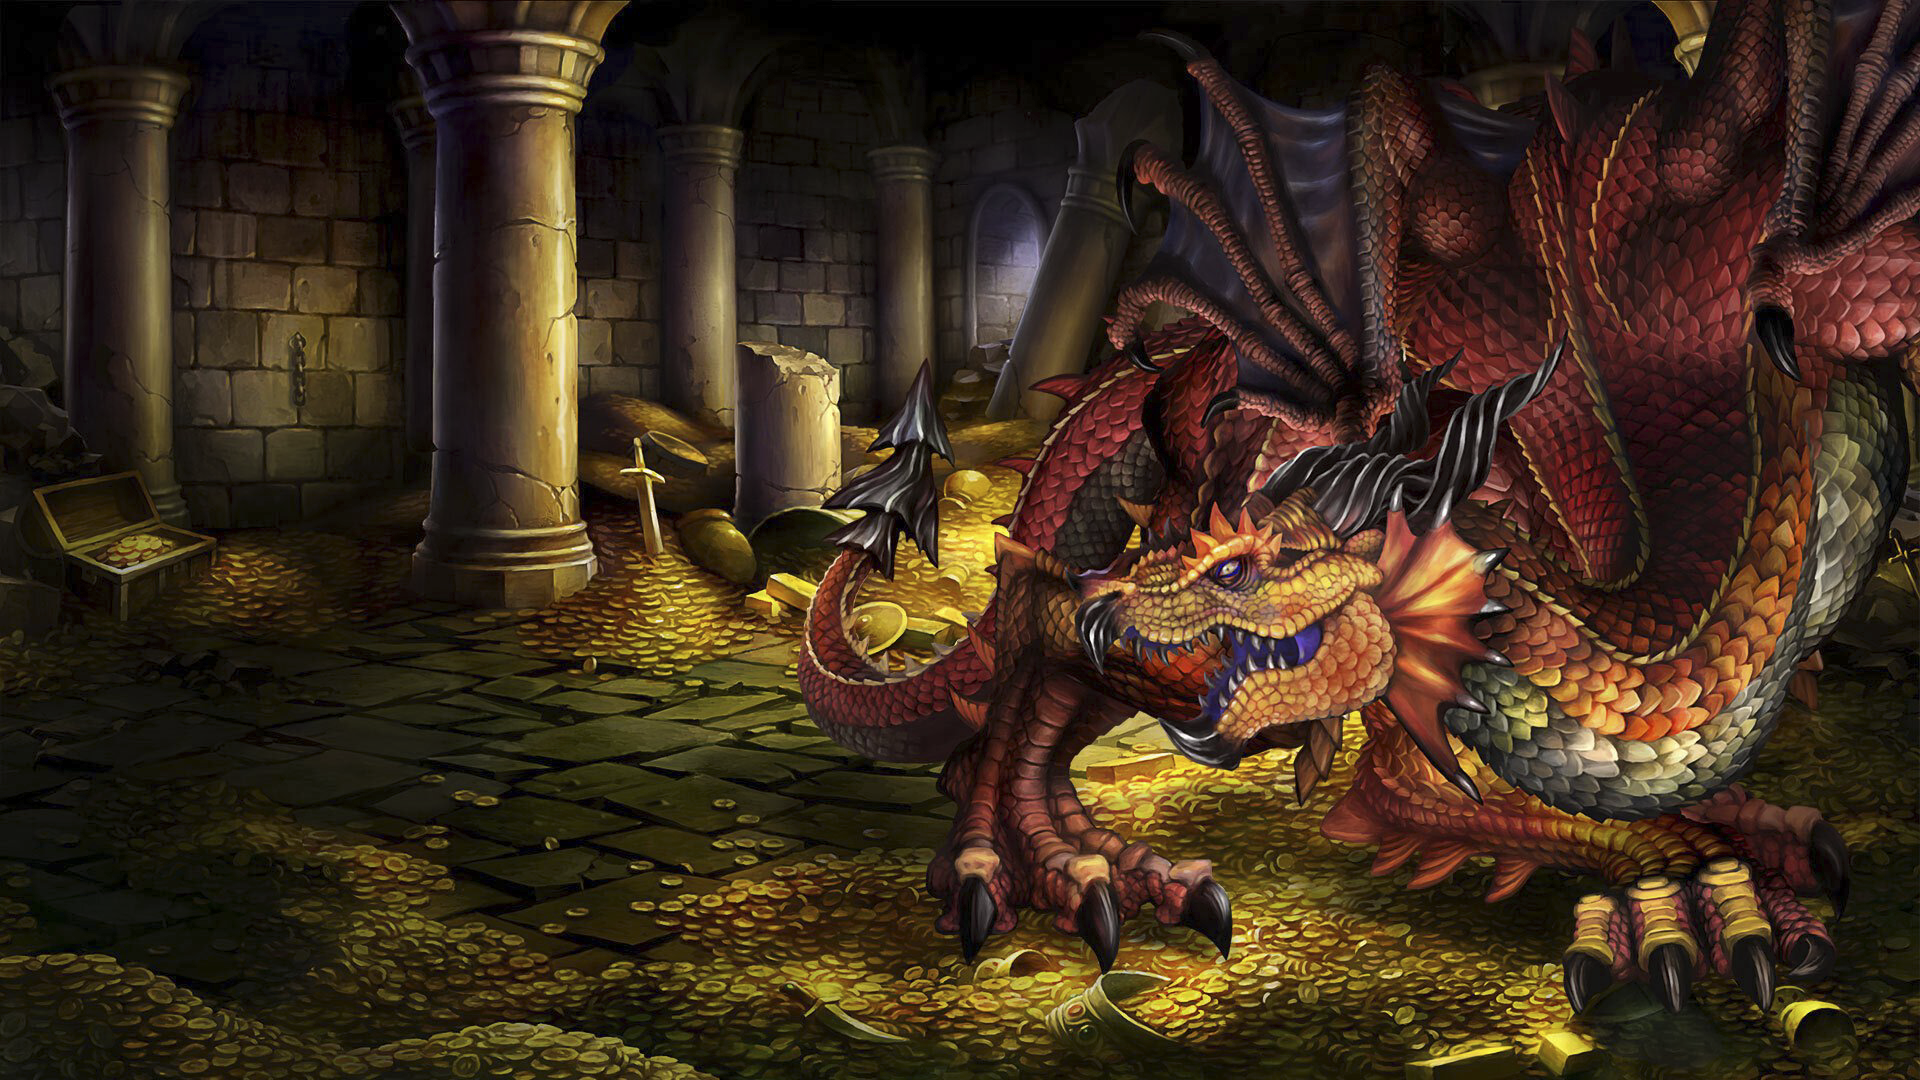 Dragon's Crown Pro heldenillustratie